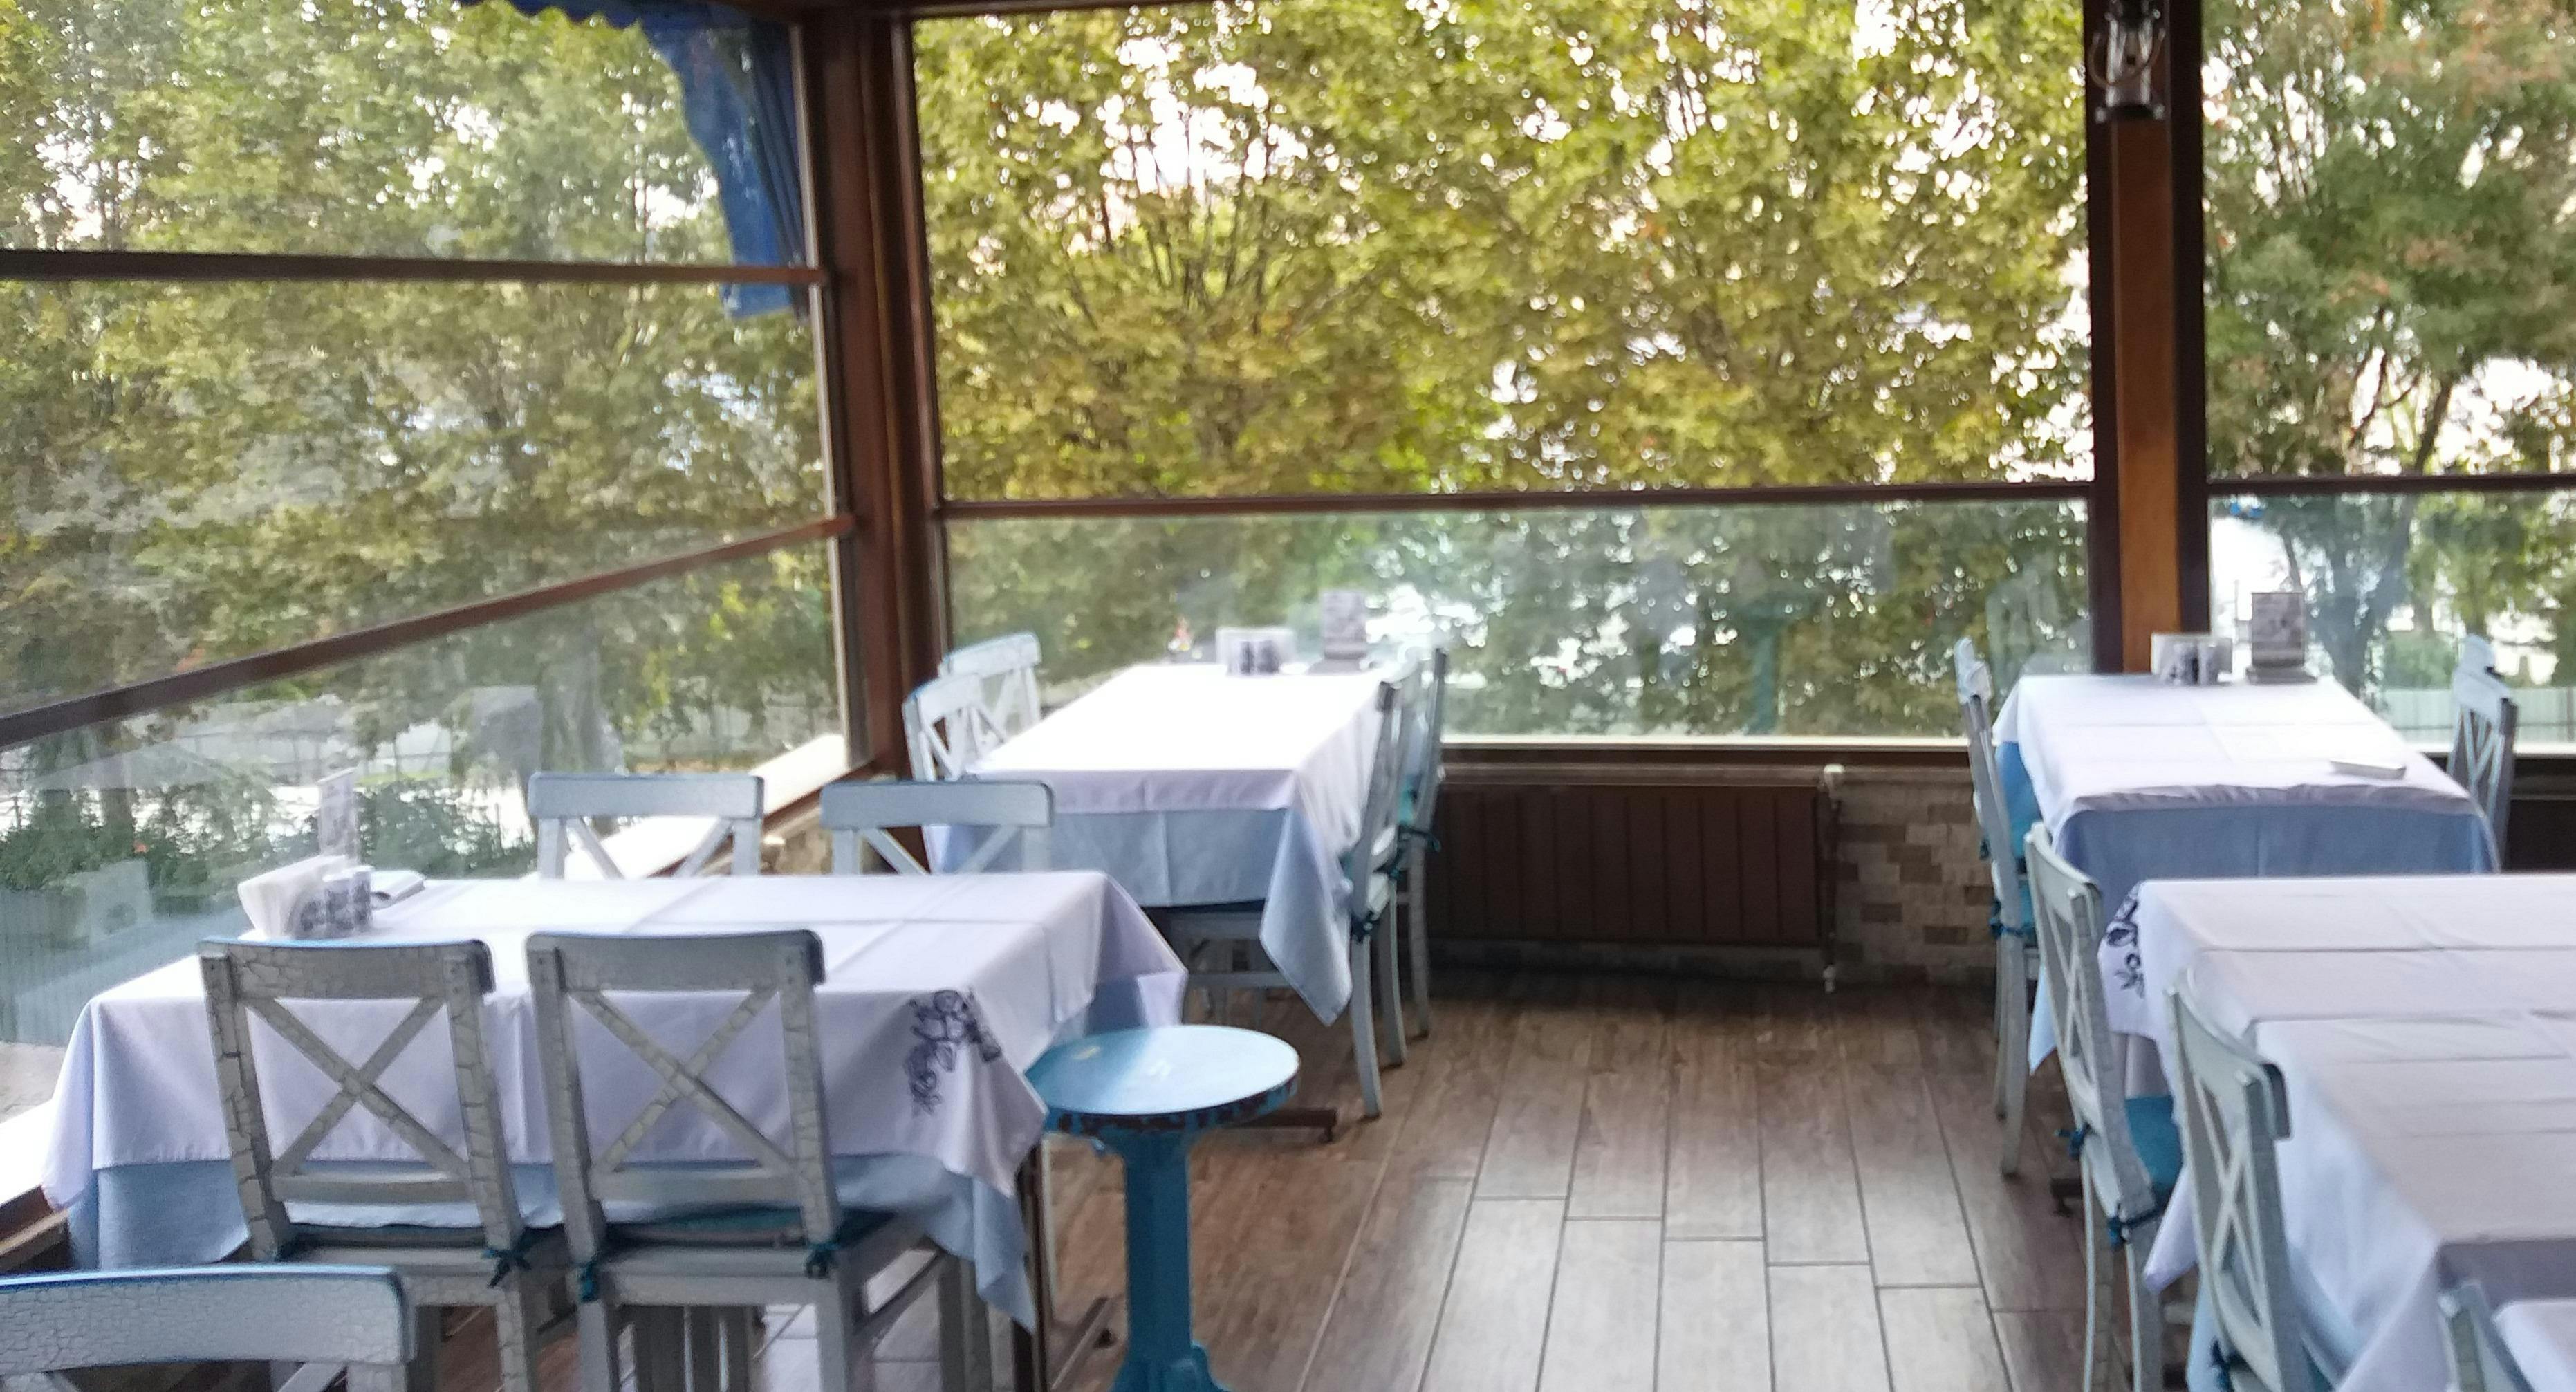 Fatih, İstanbul şehrindeki Cibali Vasilis Balıkçısı restoranının fotoğrafı